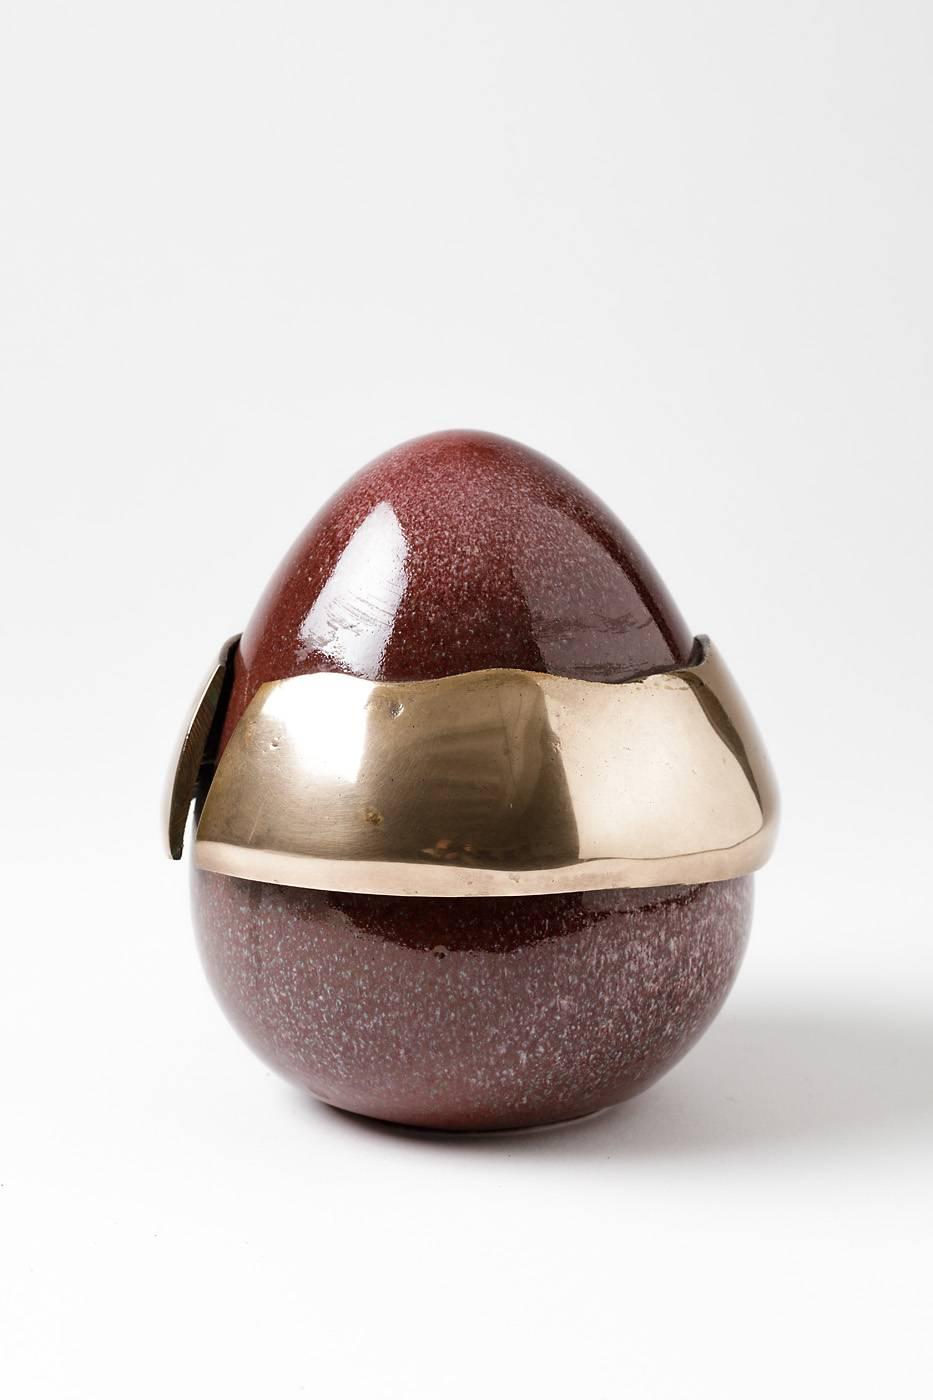 Forme d'œuf élégante de l'artiste Tim Orr.

Porcelaine avec glaçure céramique rouge et pièce de bronze.

Conditions parfaites et signé sous la base.

vers 1970.